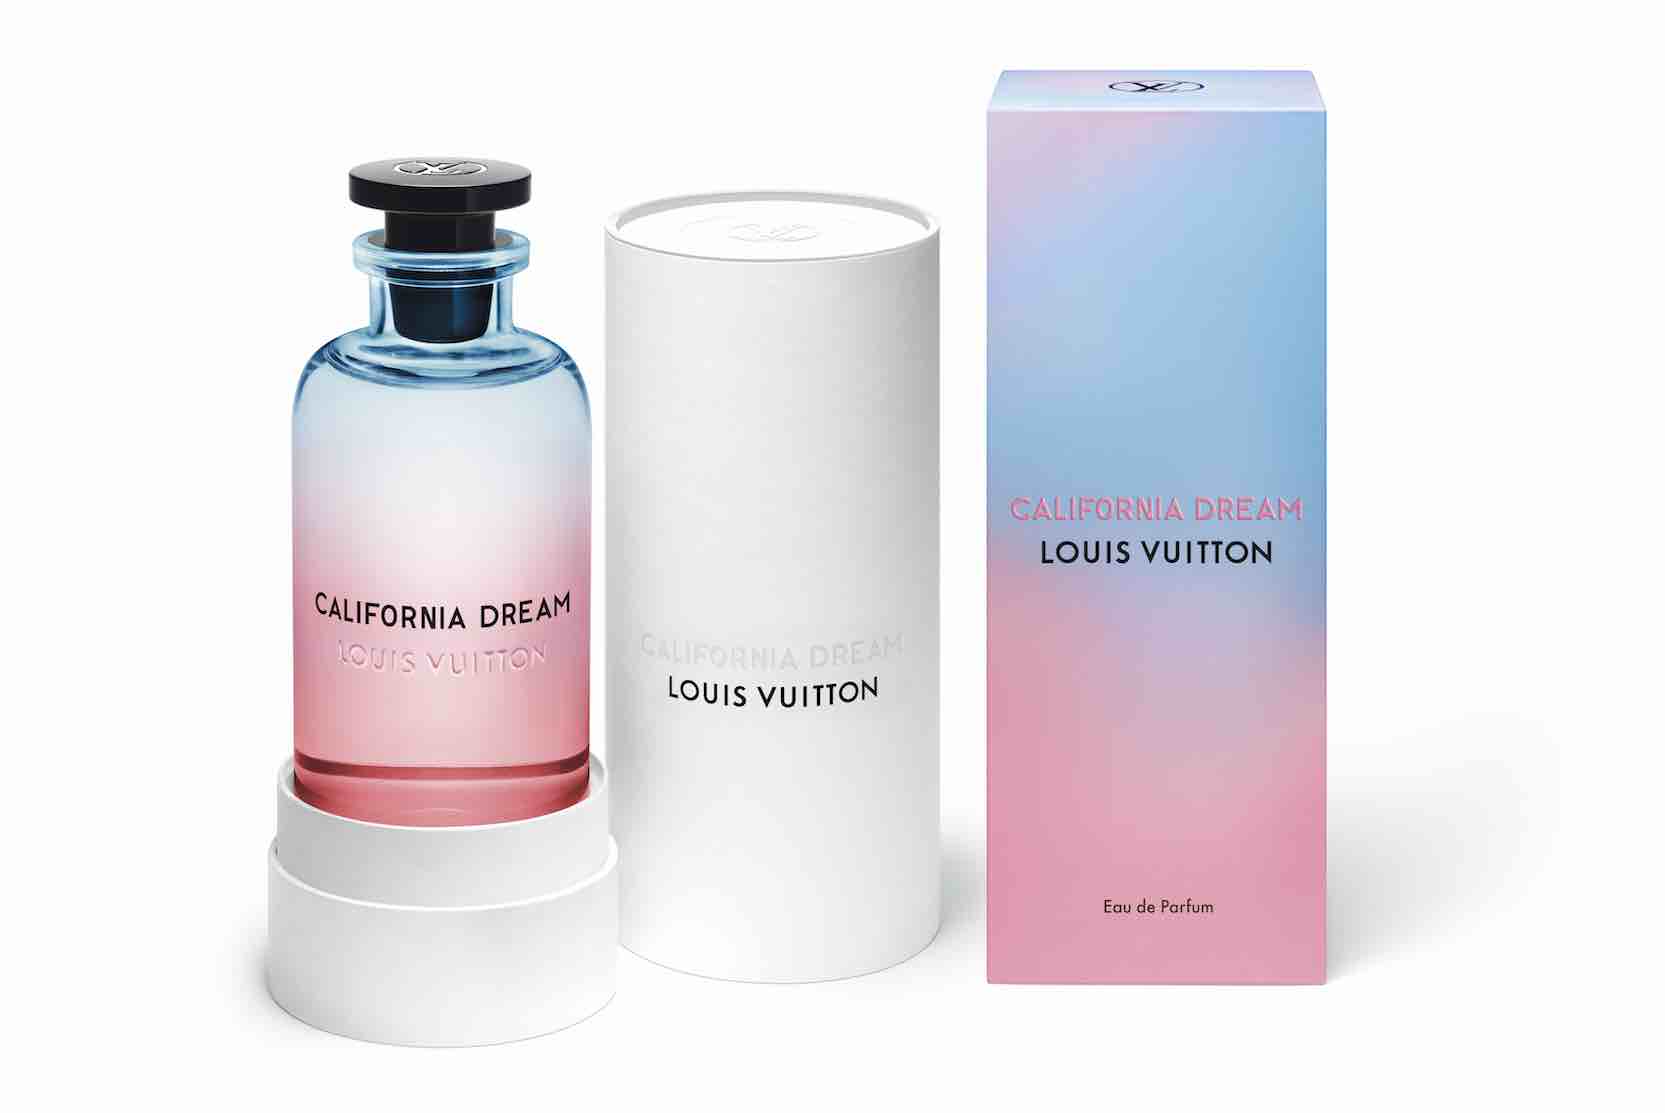 California Dream, le nouveau parfum de cologne de Louis Vuitton | www.bagssaleusa.com/product-category/onthego-bag/